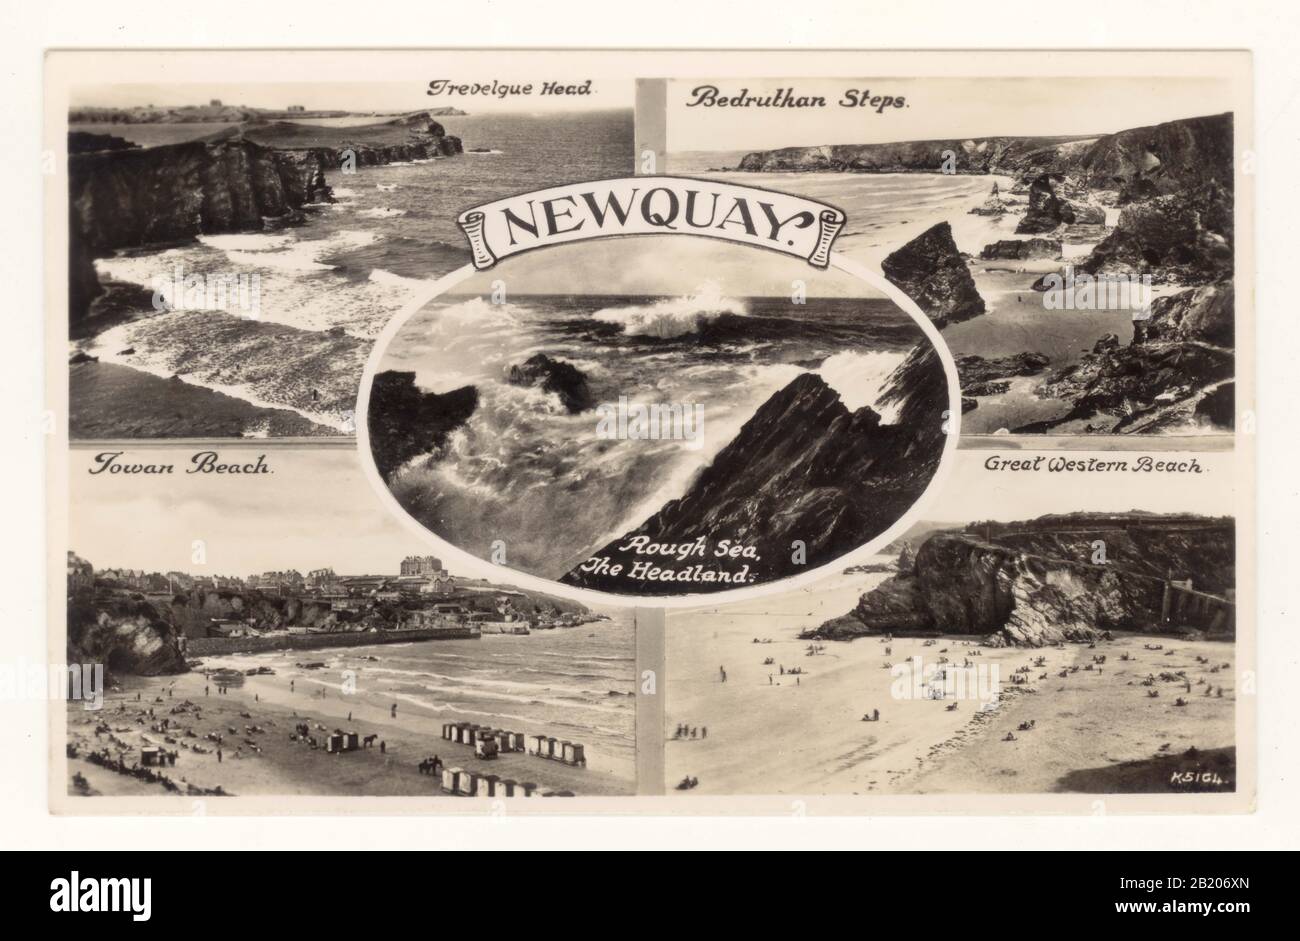 Tarjeta postal de principios de 1900 con vistas múltiples del popular centro turístico costero Cornish de Newquay, alrededor de 1910's, principios de 1920's, Cornwall, S.W. Inglaterra, Reino Unido Foto de stock